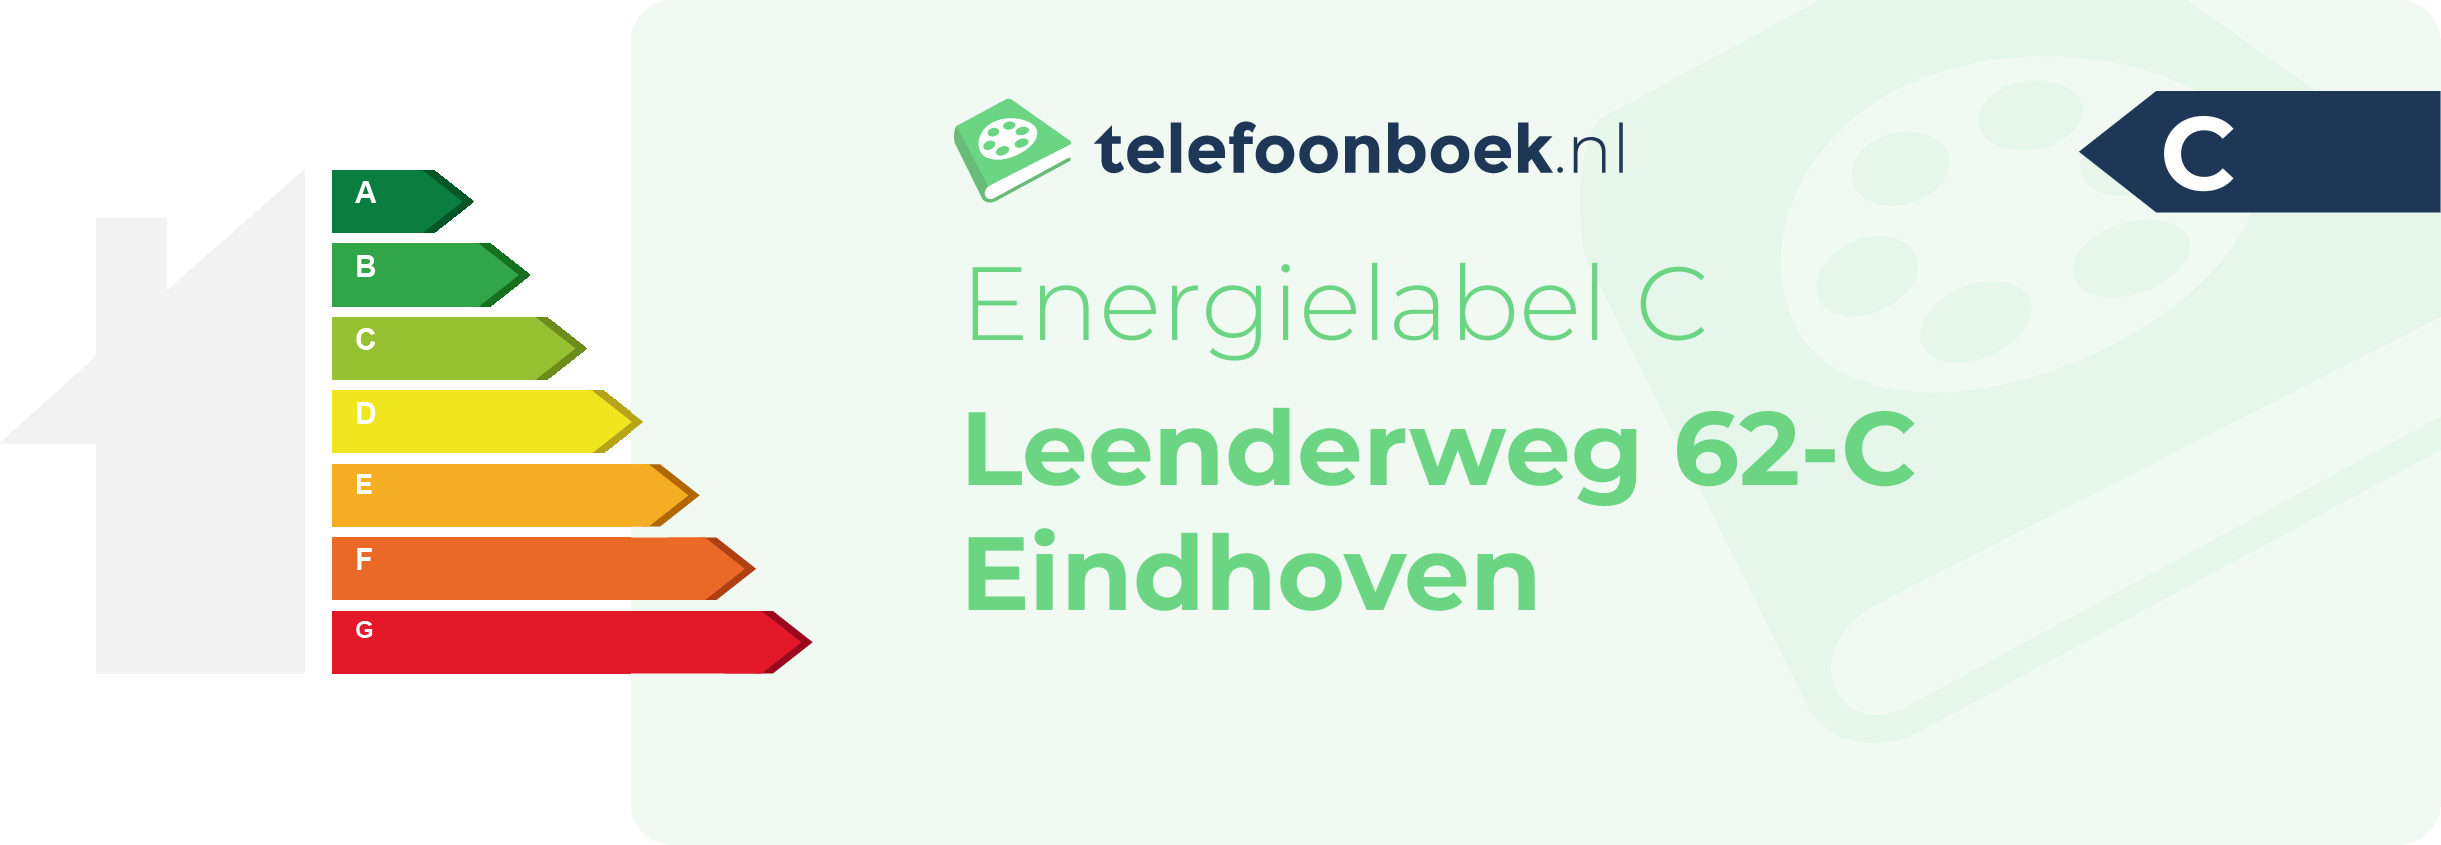 Energielabel Leenderweg 62-C Eindhoven